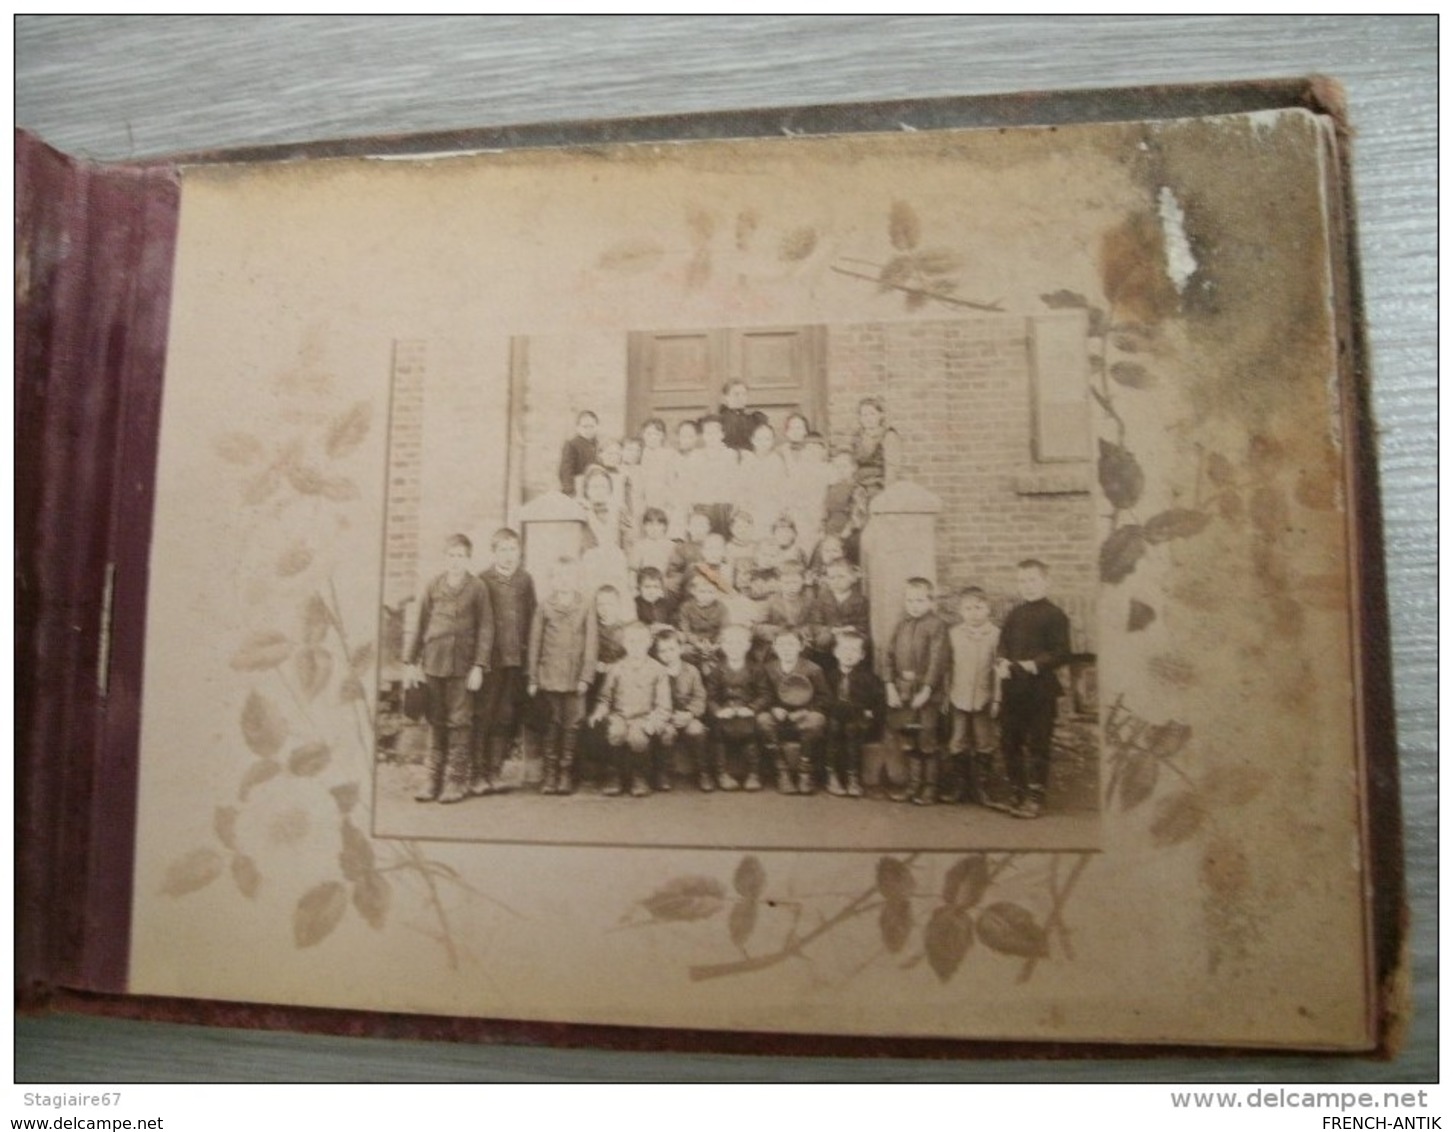 ALBUM DE FAMILLE POLOGNE  23 PHOTO MONTAGE 1890